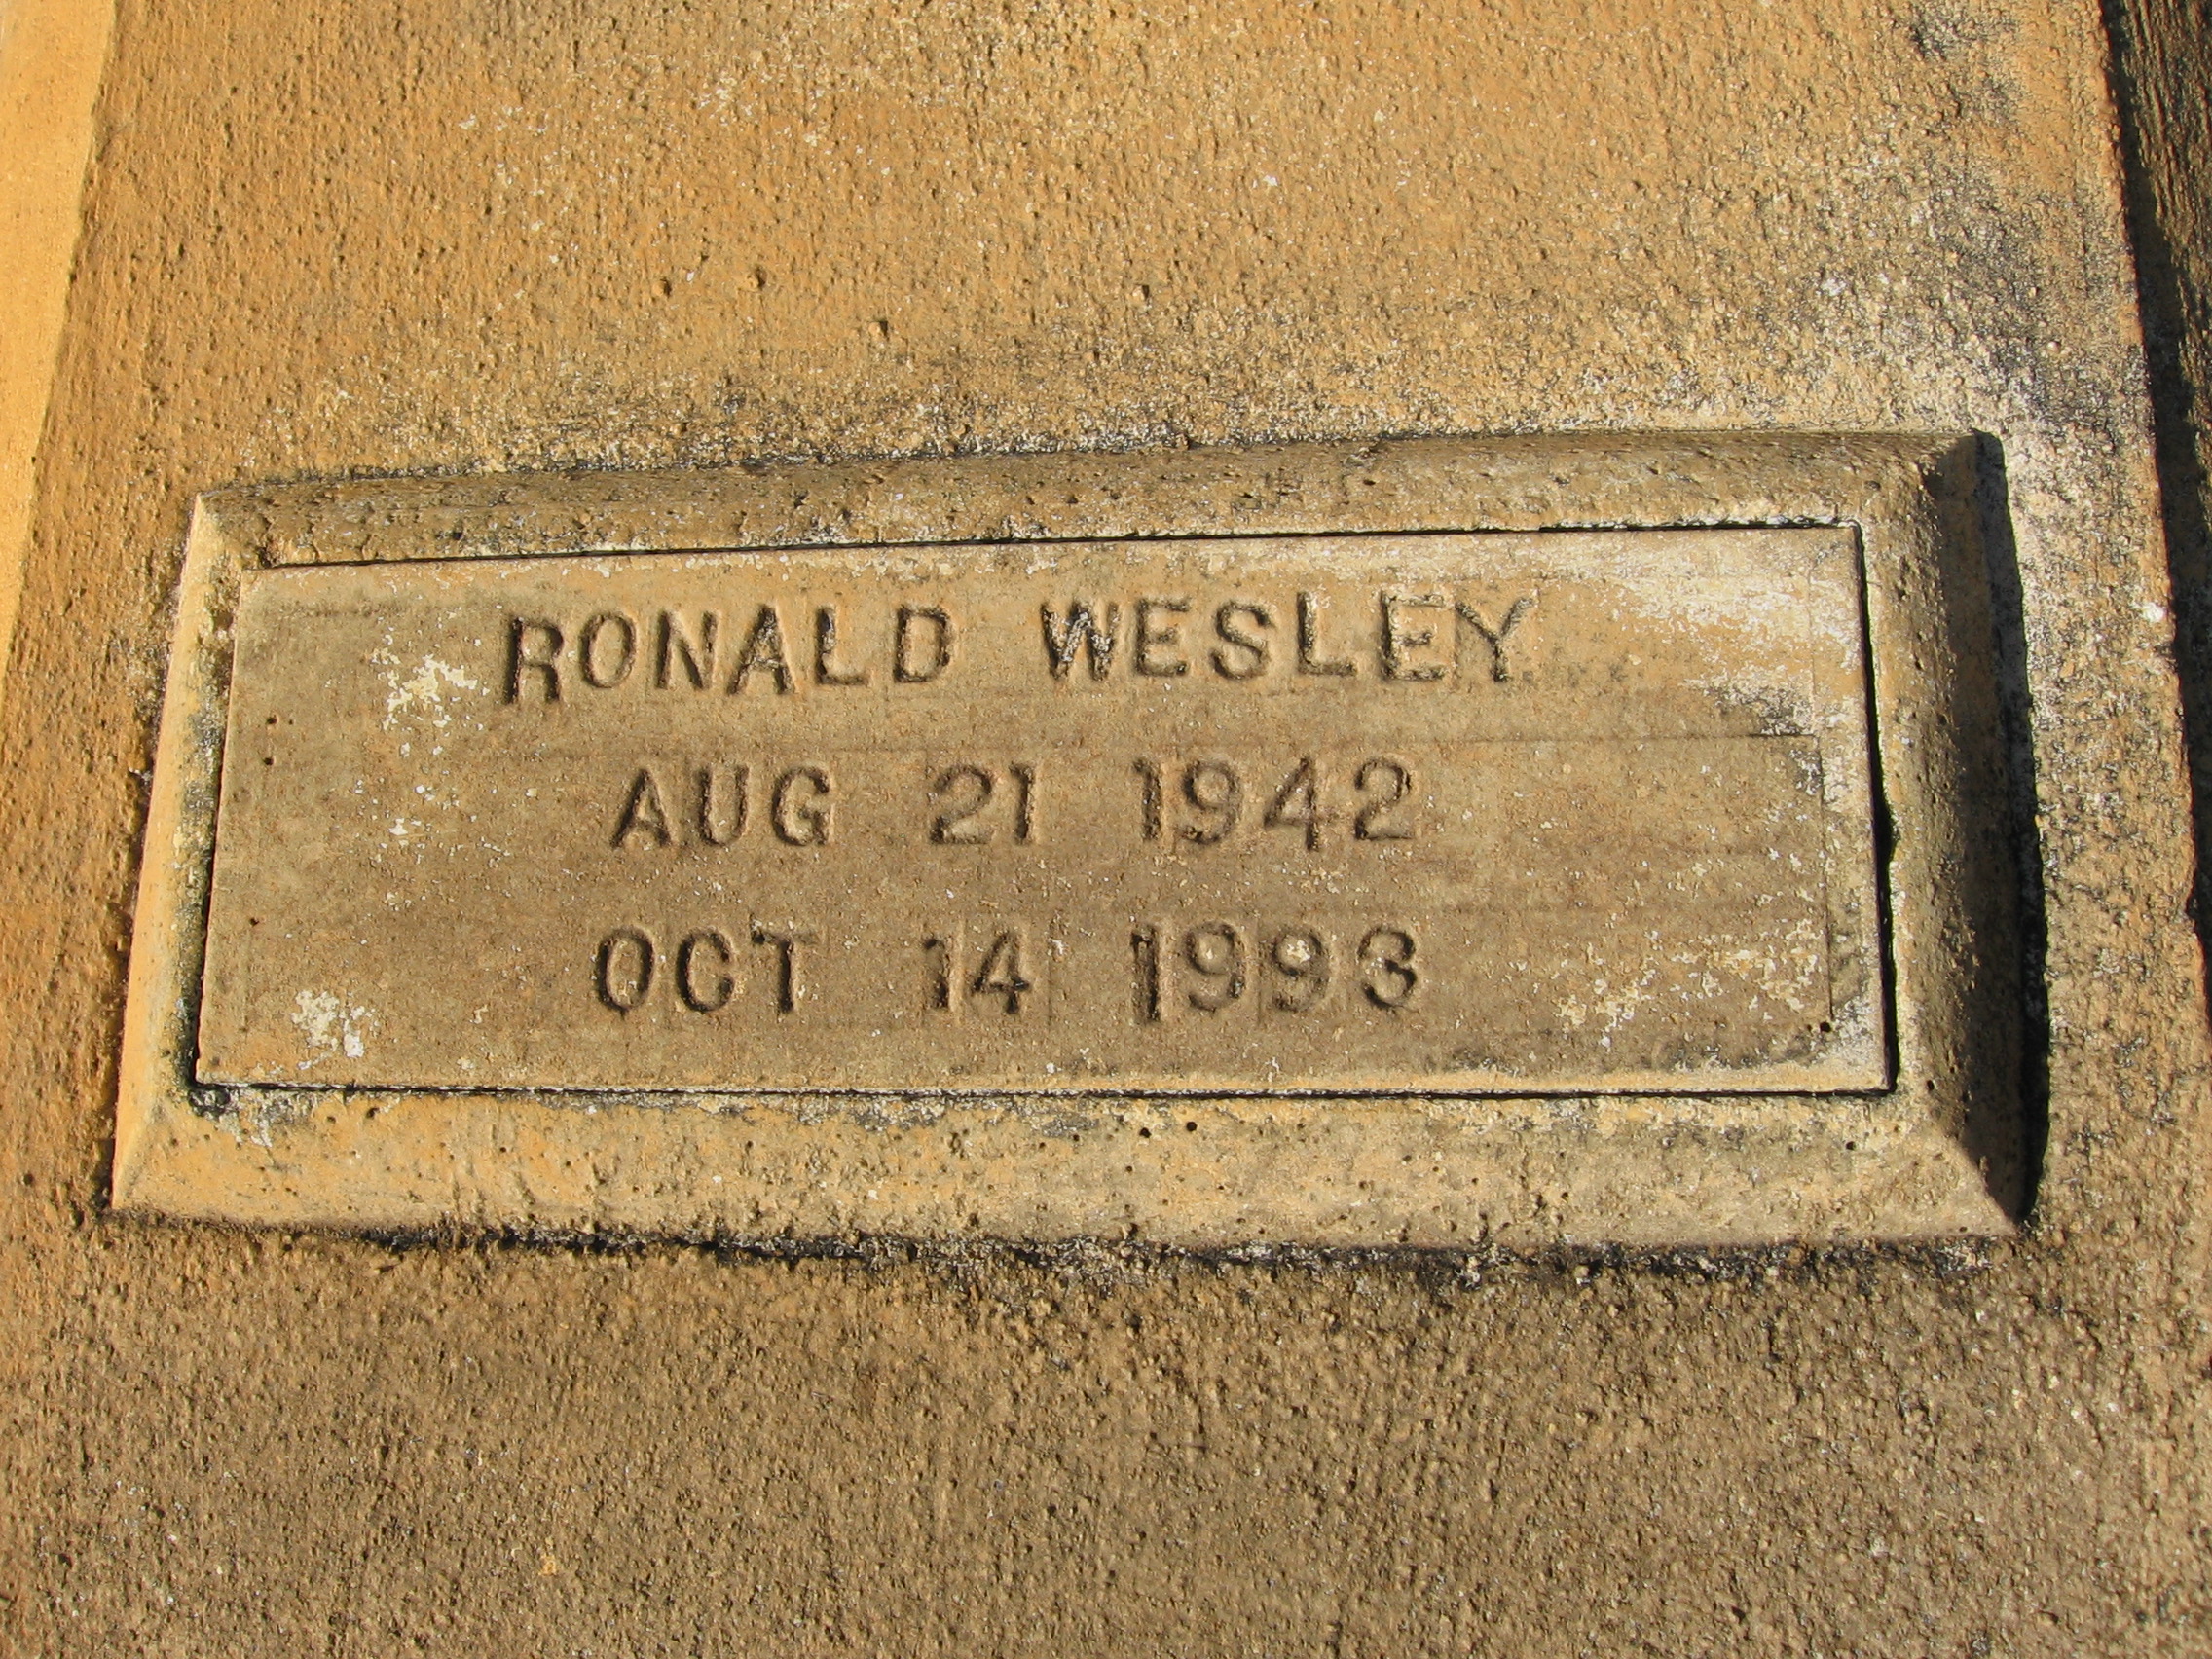 Ronald Wesley